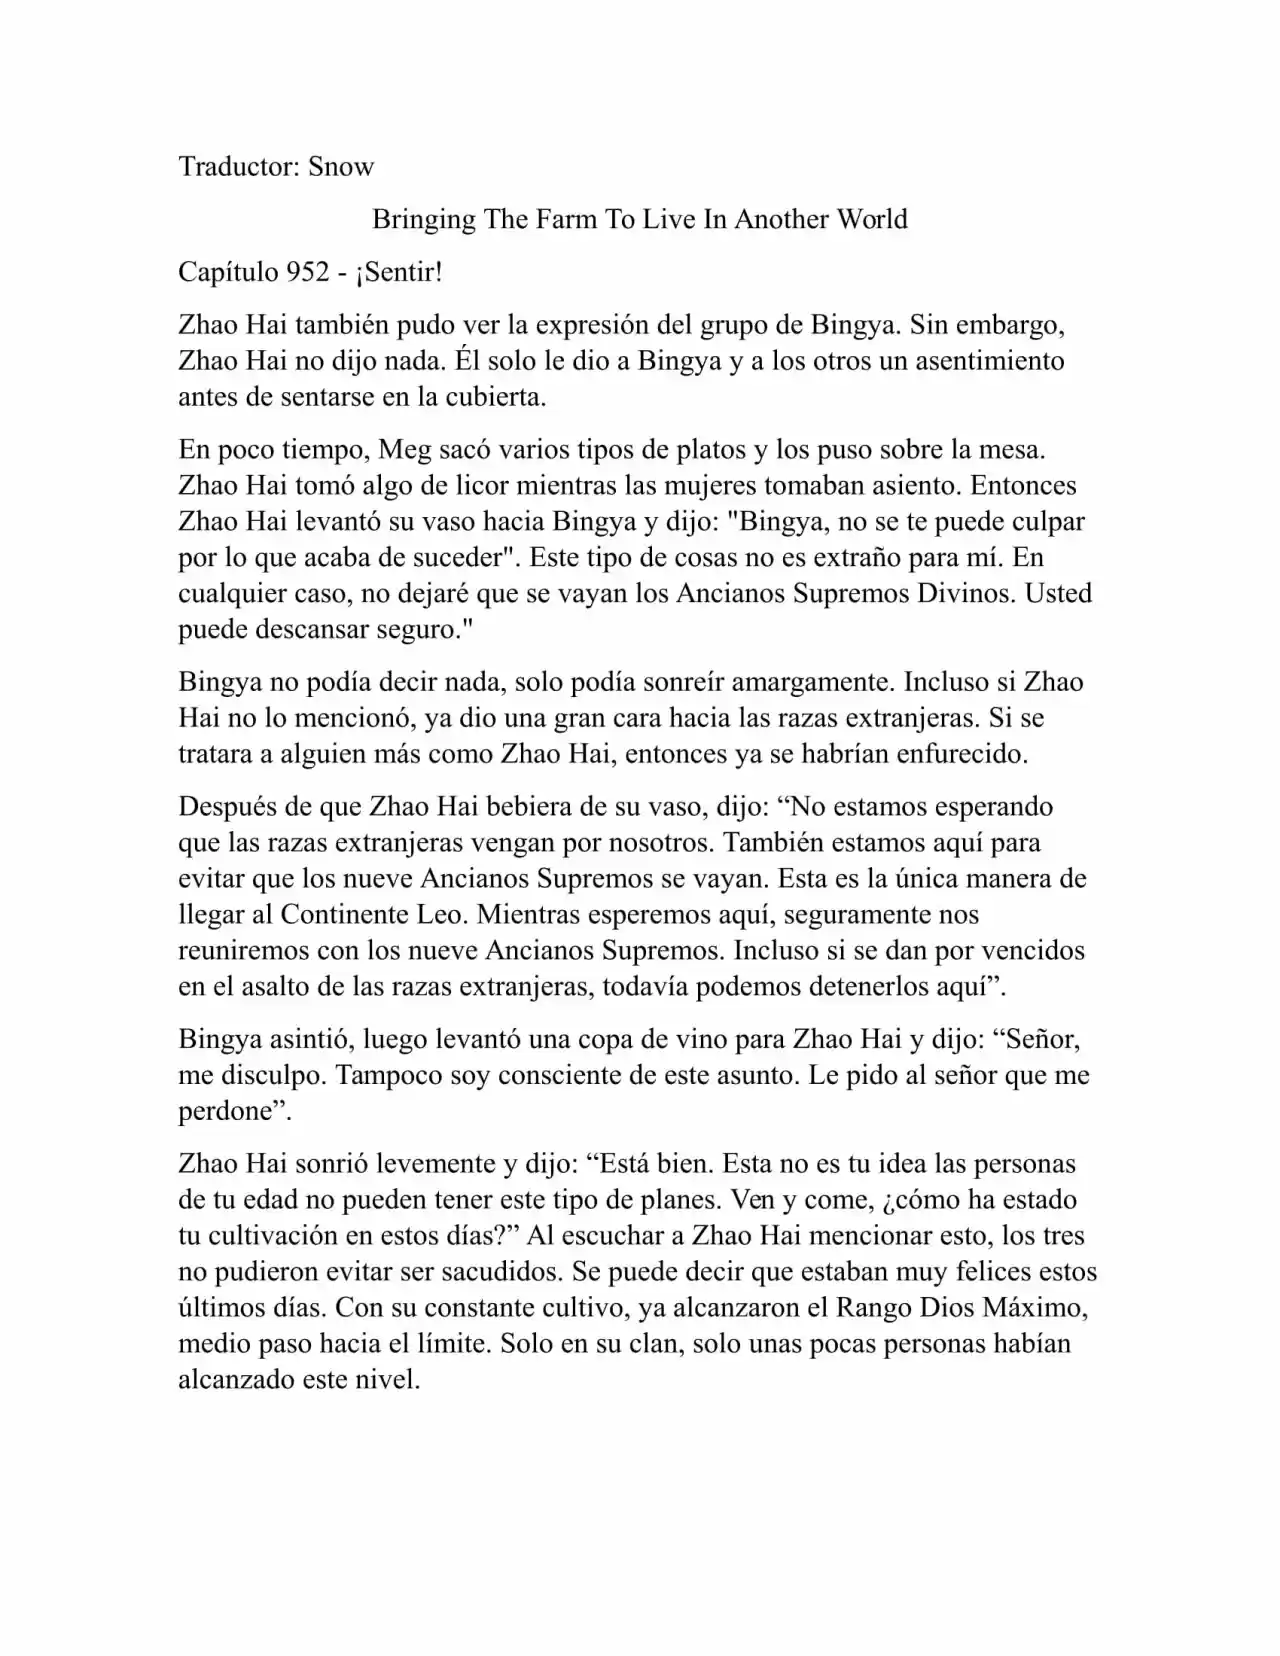 Llevando La Granja Para Vivir En Otro Mundo (Novela: Chapter 952 - Page 1